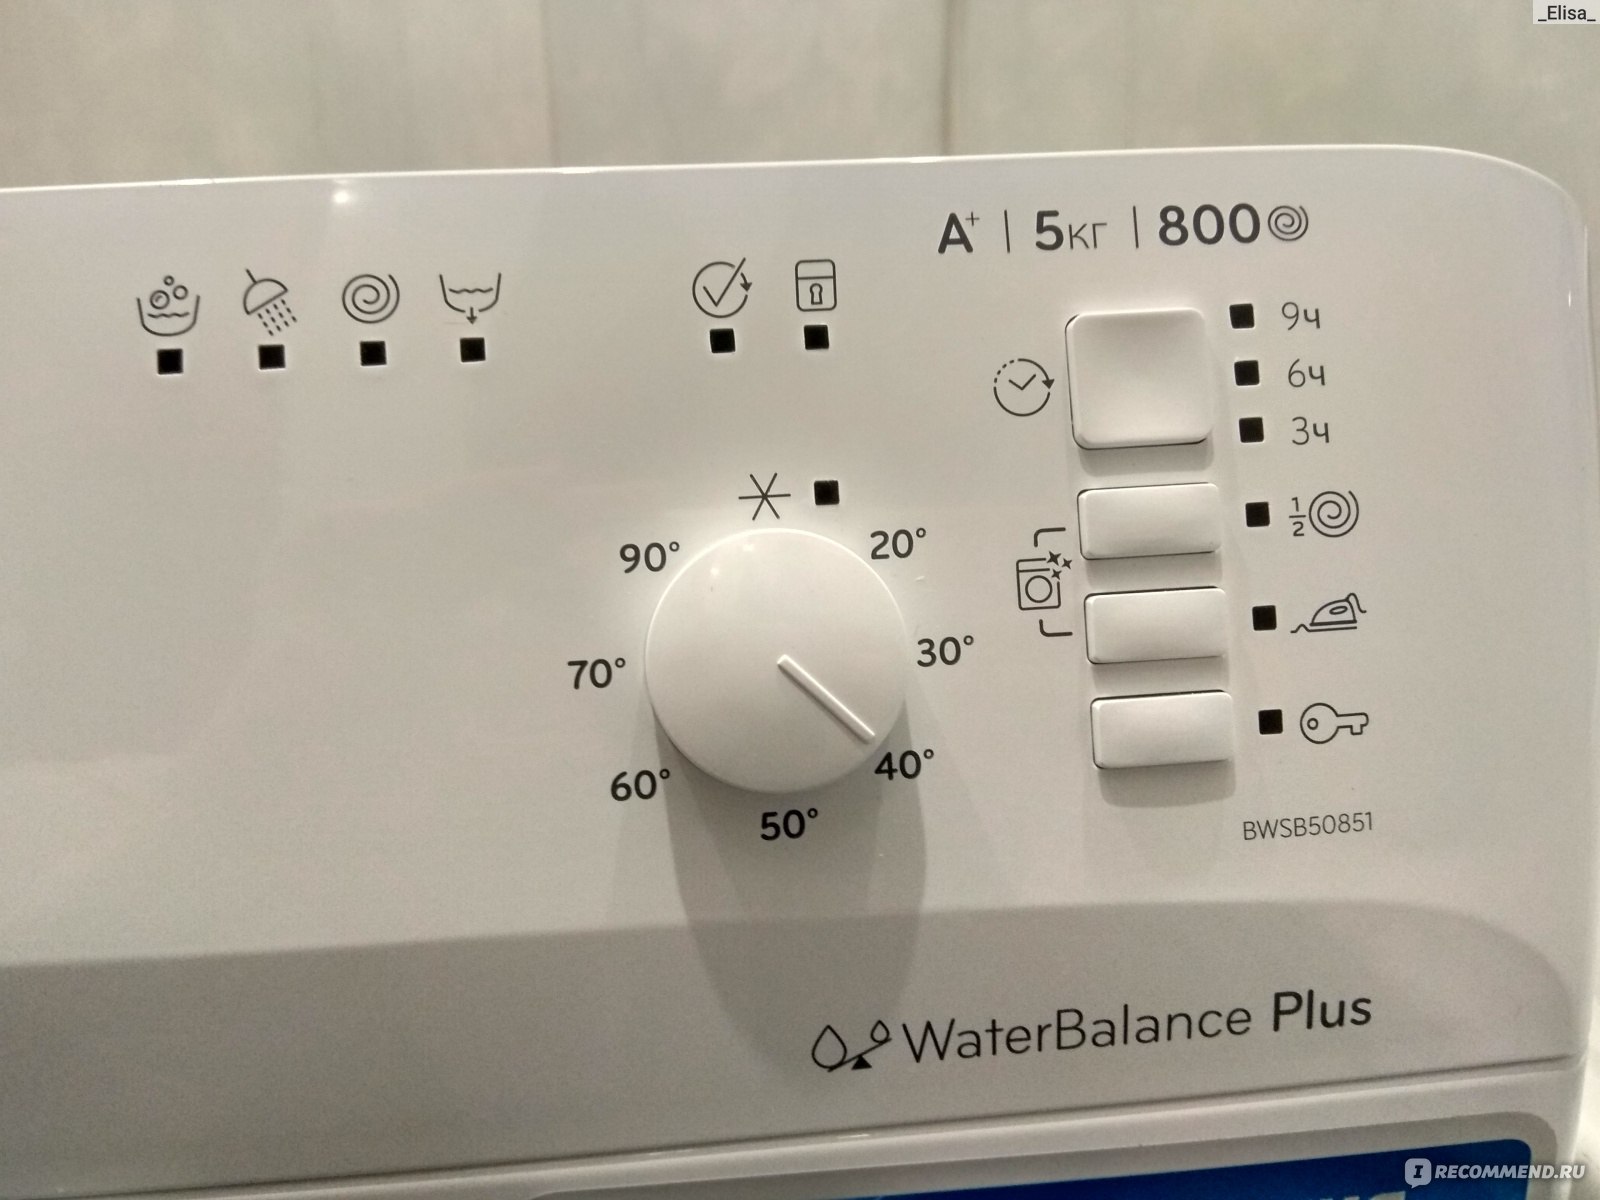 Как перезагрузить машину индезит. Стиральная машина Индезит Water Balance Plus 5кг. Программа для стиральной машины Индезит Water Balance Plus.